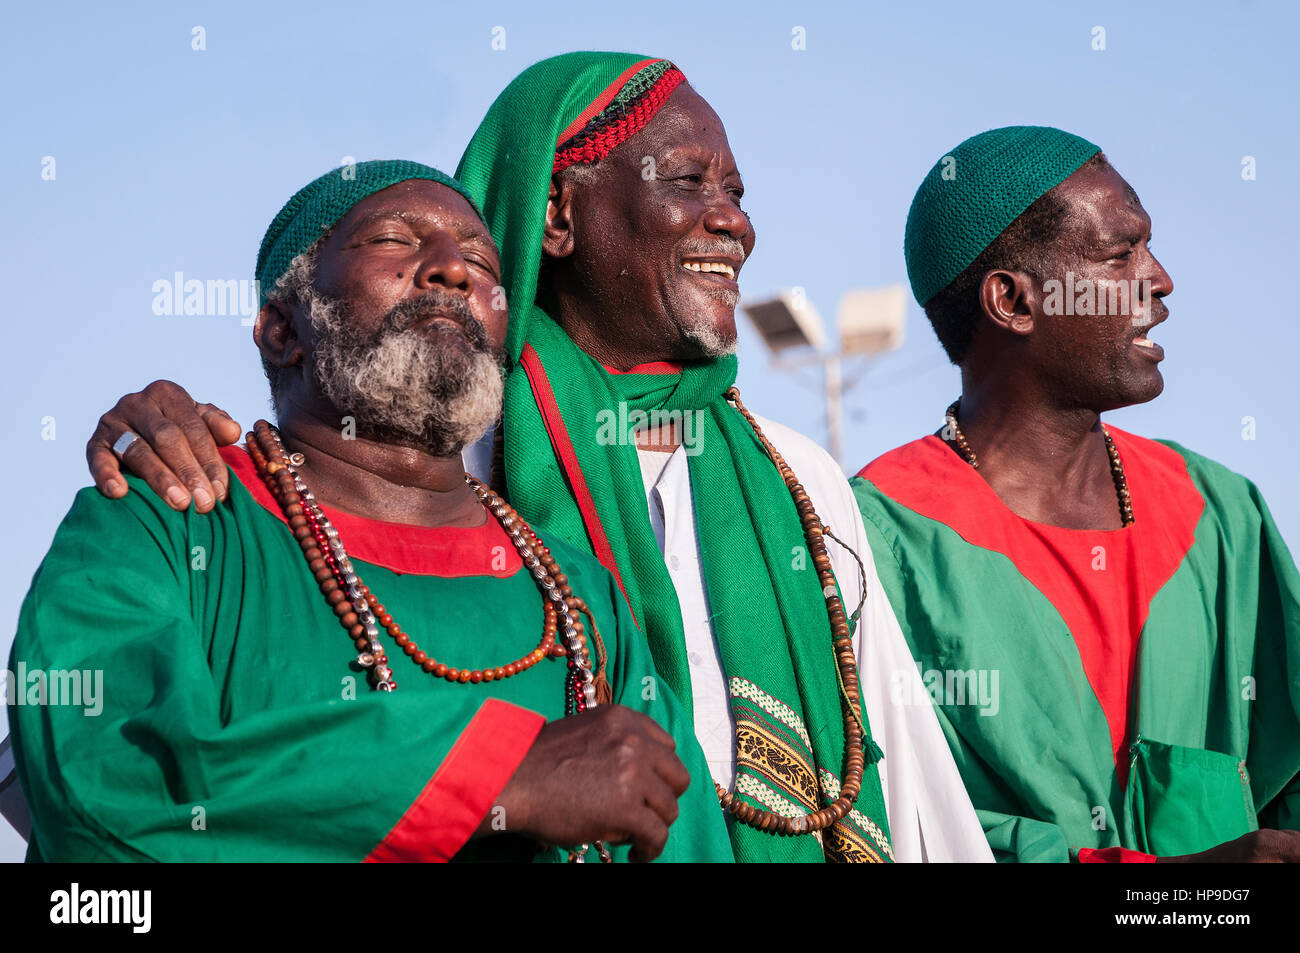 SUDAN, OMDURMAN: Jeden Freitag die Sufis von Omdurman, die andere Hälfte des nördlichen Sudan Hauptstadt Khartum, sammeln für ihre "Dhikr" - singen und tanzen Stockfoto